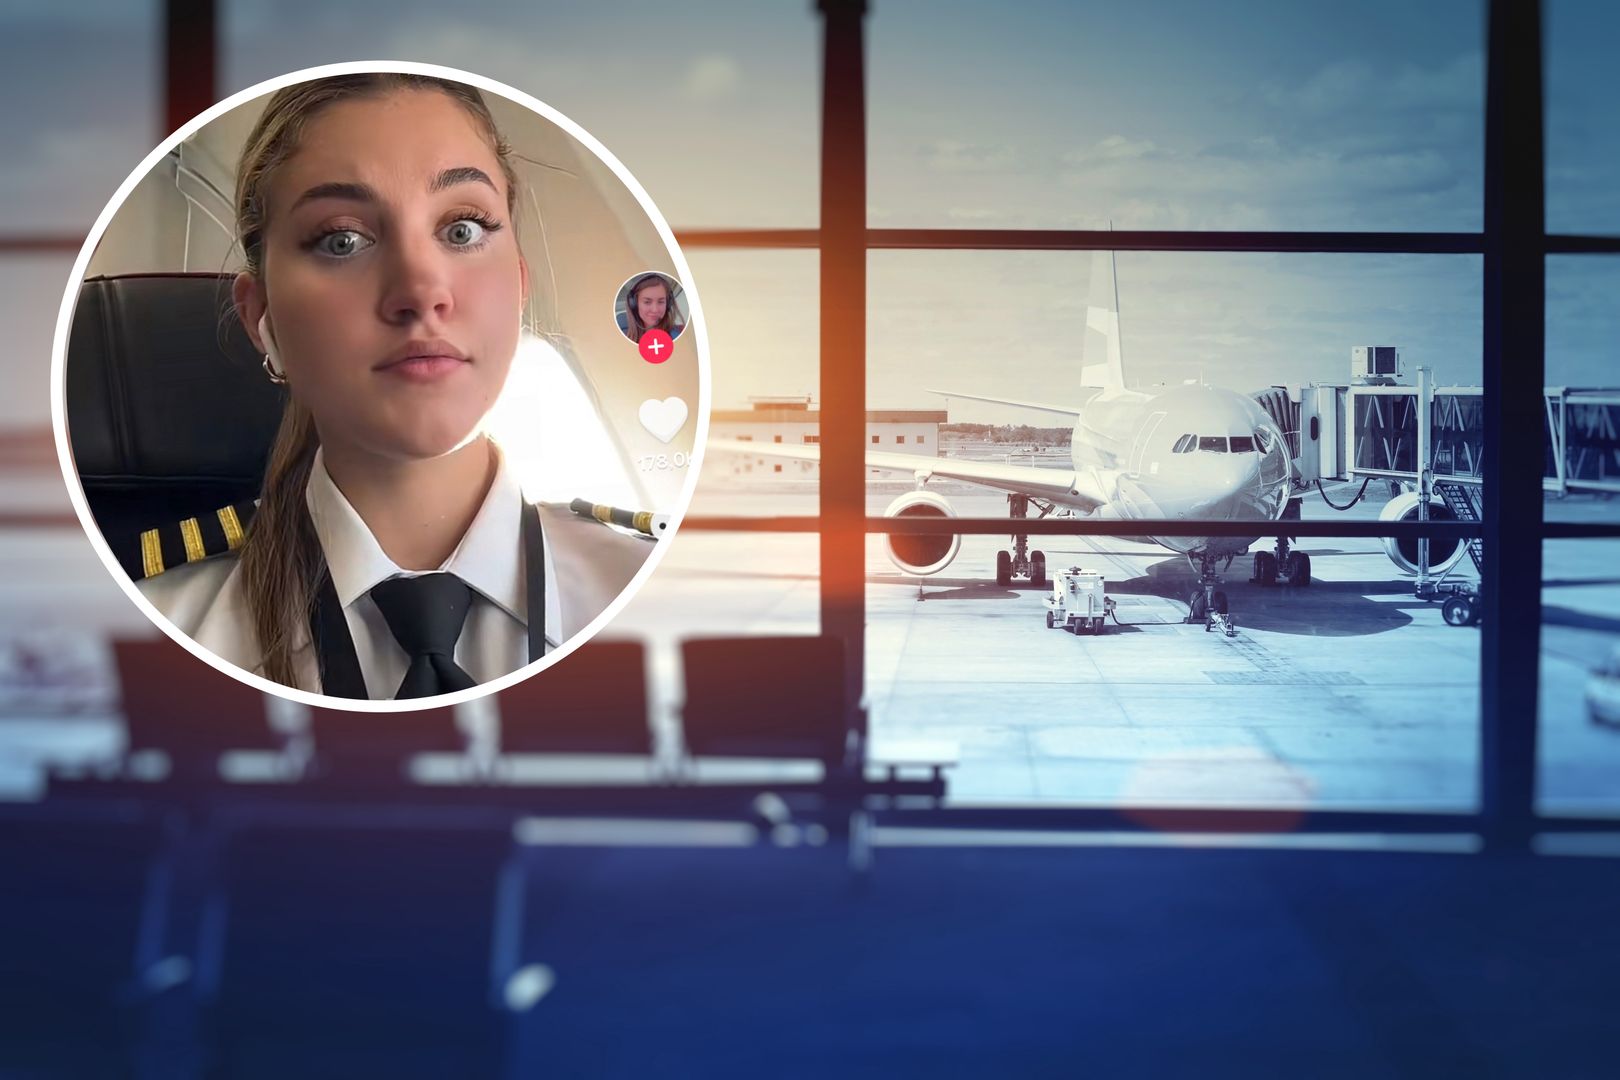 Pilotka ujawnia pomyłki pracowników lotniska. "To dla mnie wstrząsające"